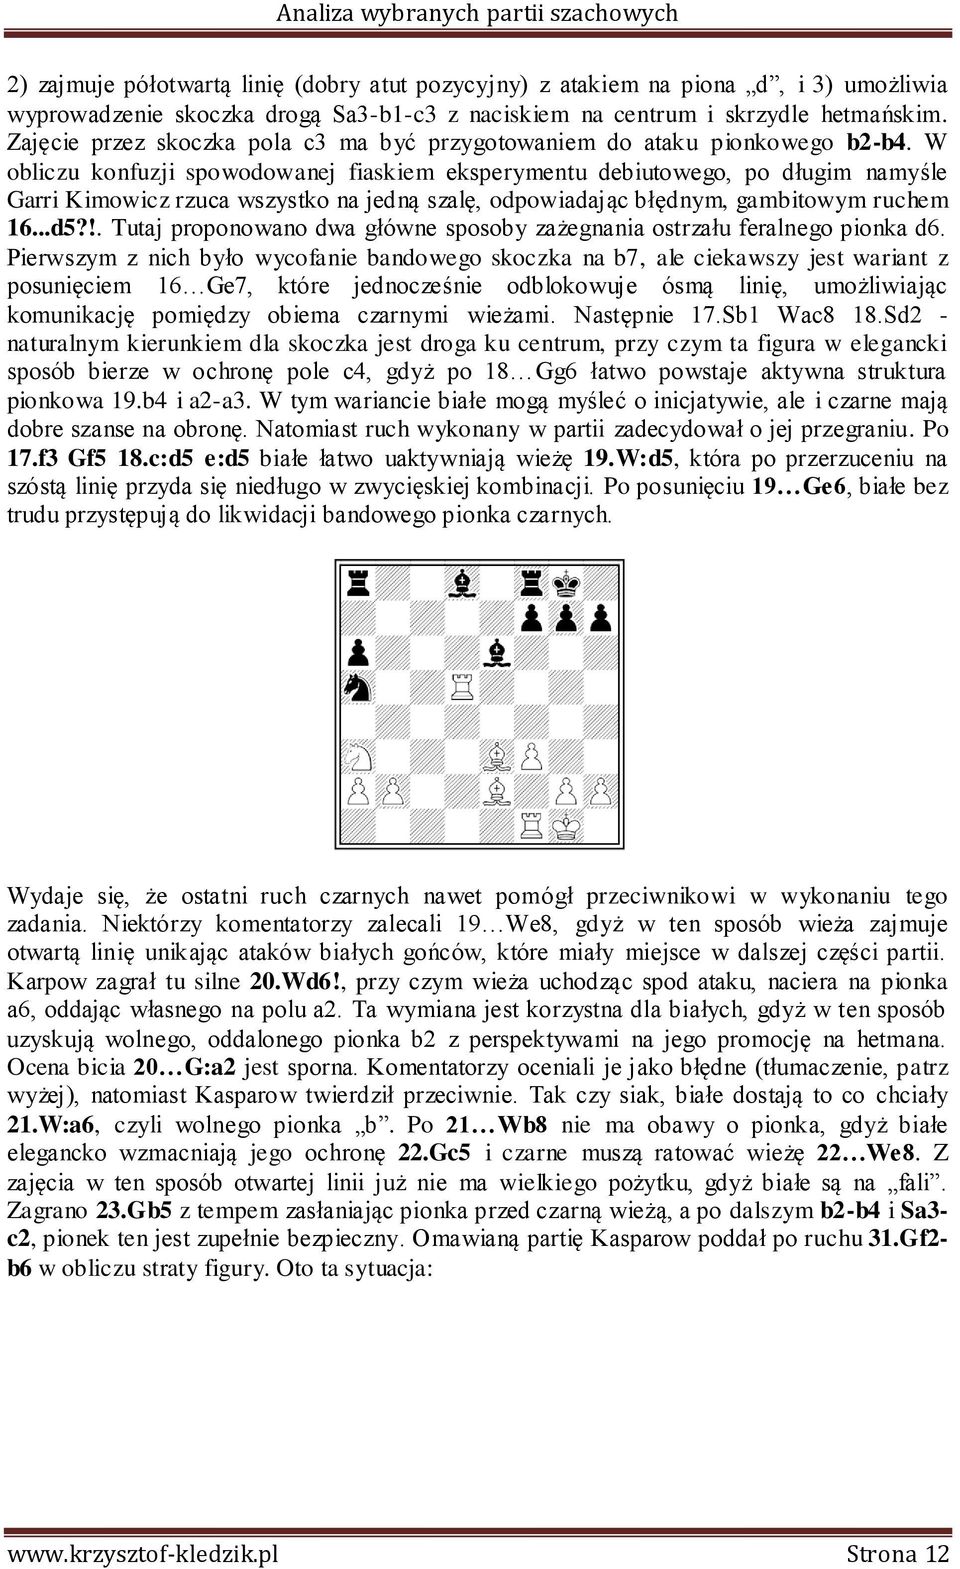 W obliczu konfuzji spowodowanej fiaskiem eksperymentu debiutowego, po długim namyśle Garri Kimowicz rzuca wszystko na jedną szalę, odpowiadając błędnym, gambitowym ruchem 16...d5?